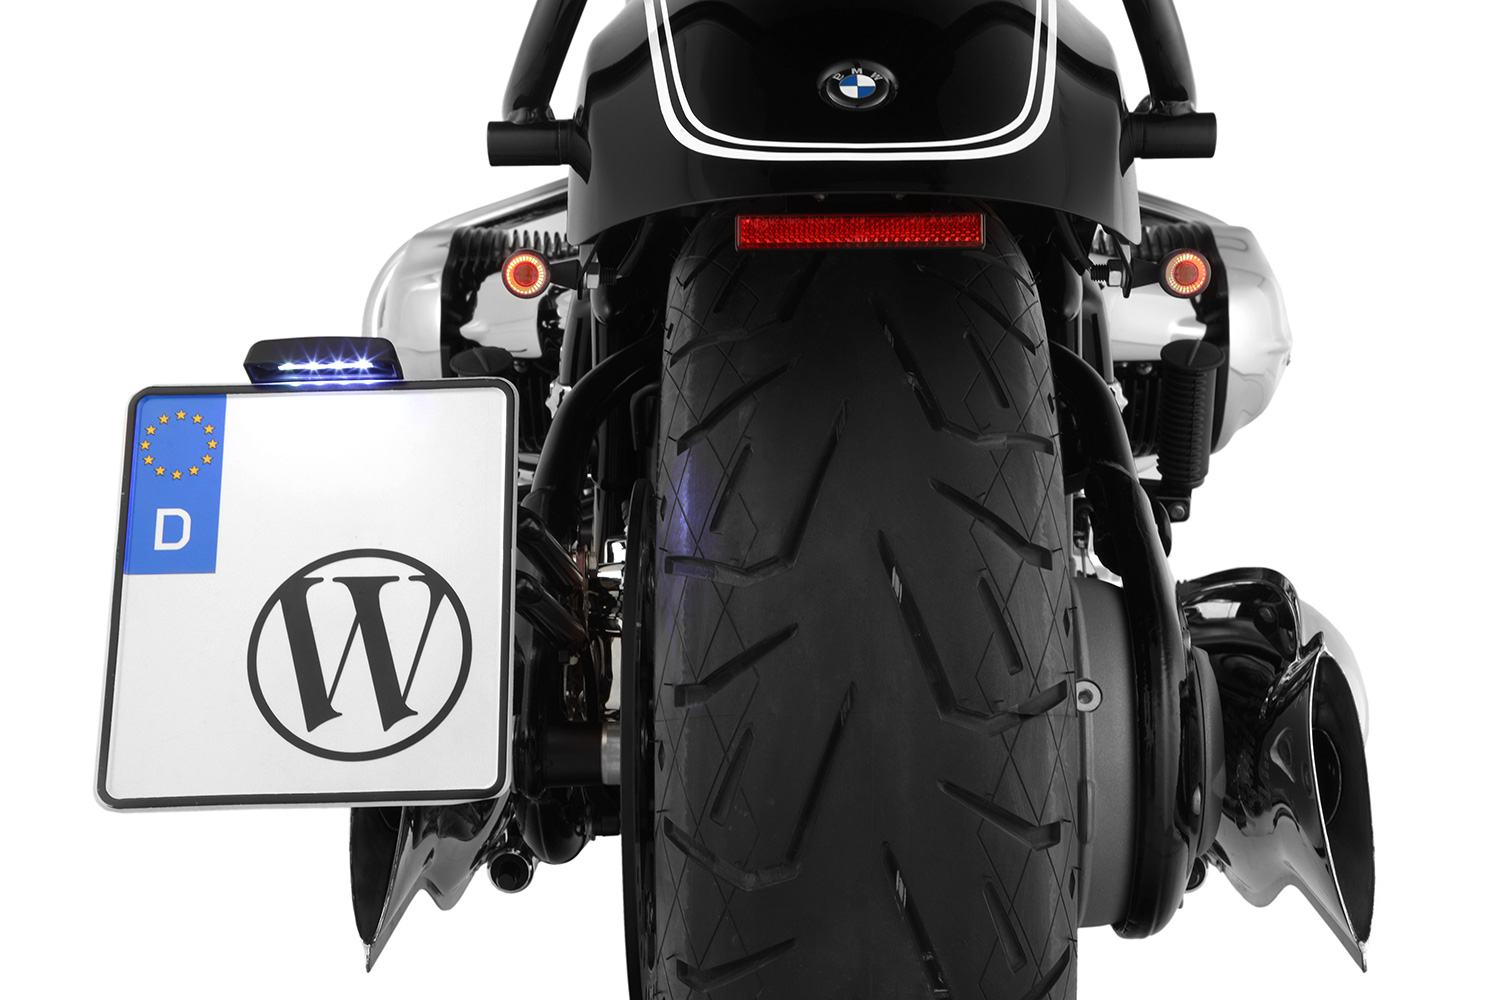 Acheter Clignotants LED Moto Apollo Bullet - Accessoire moto BST